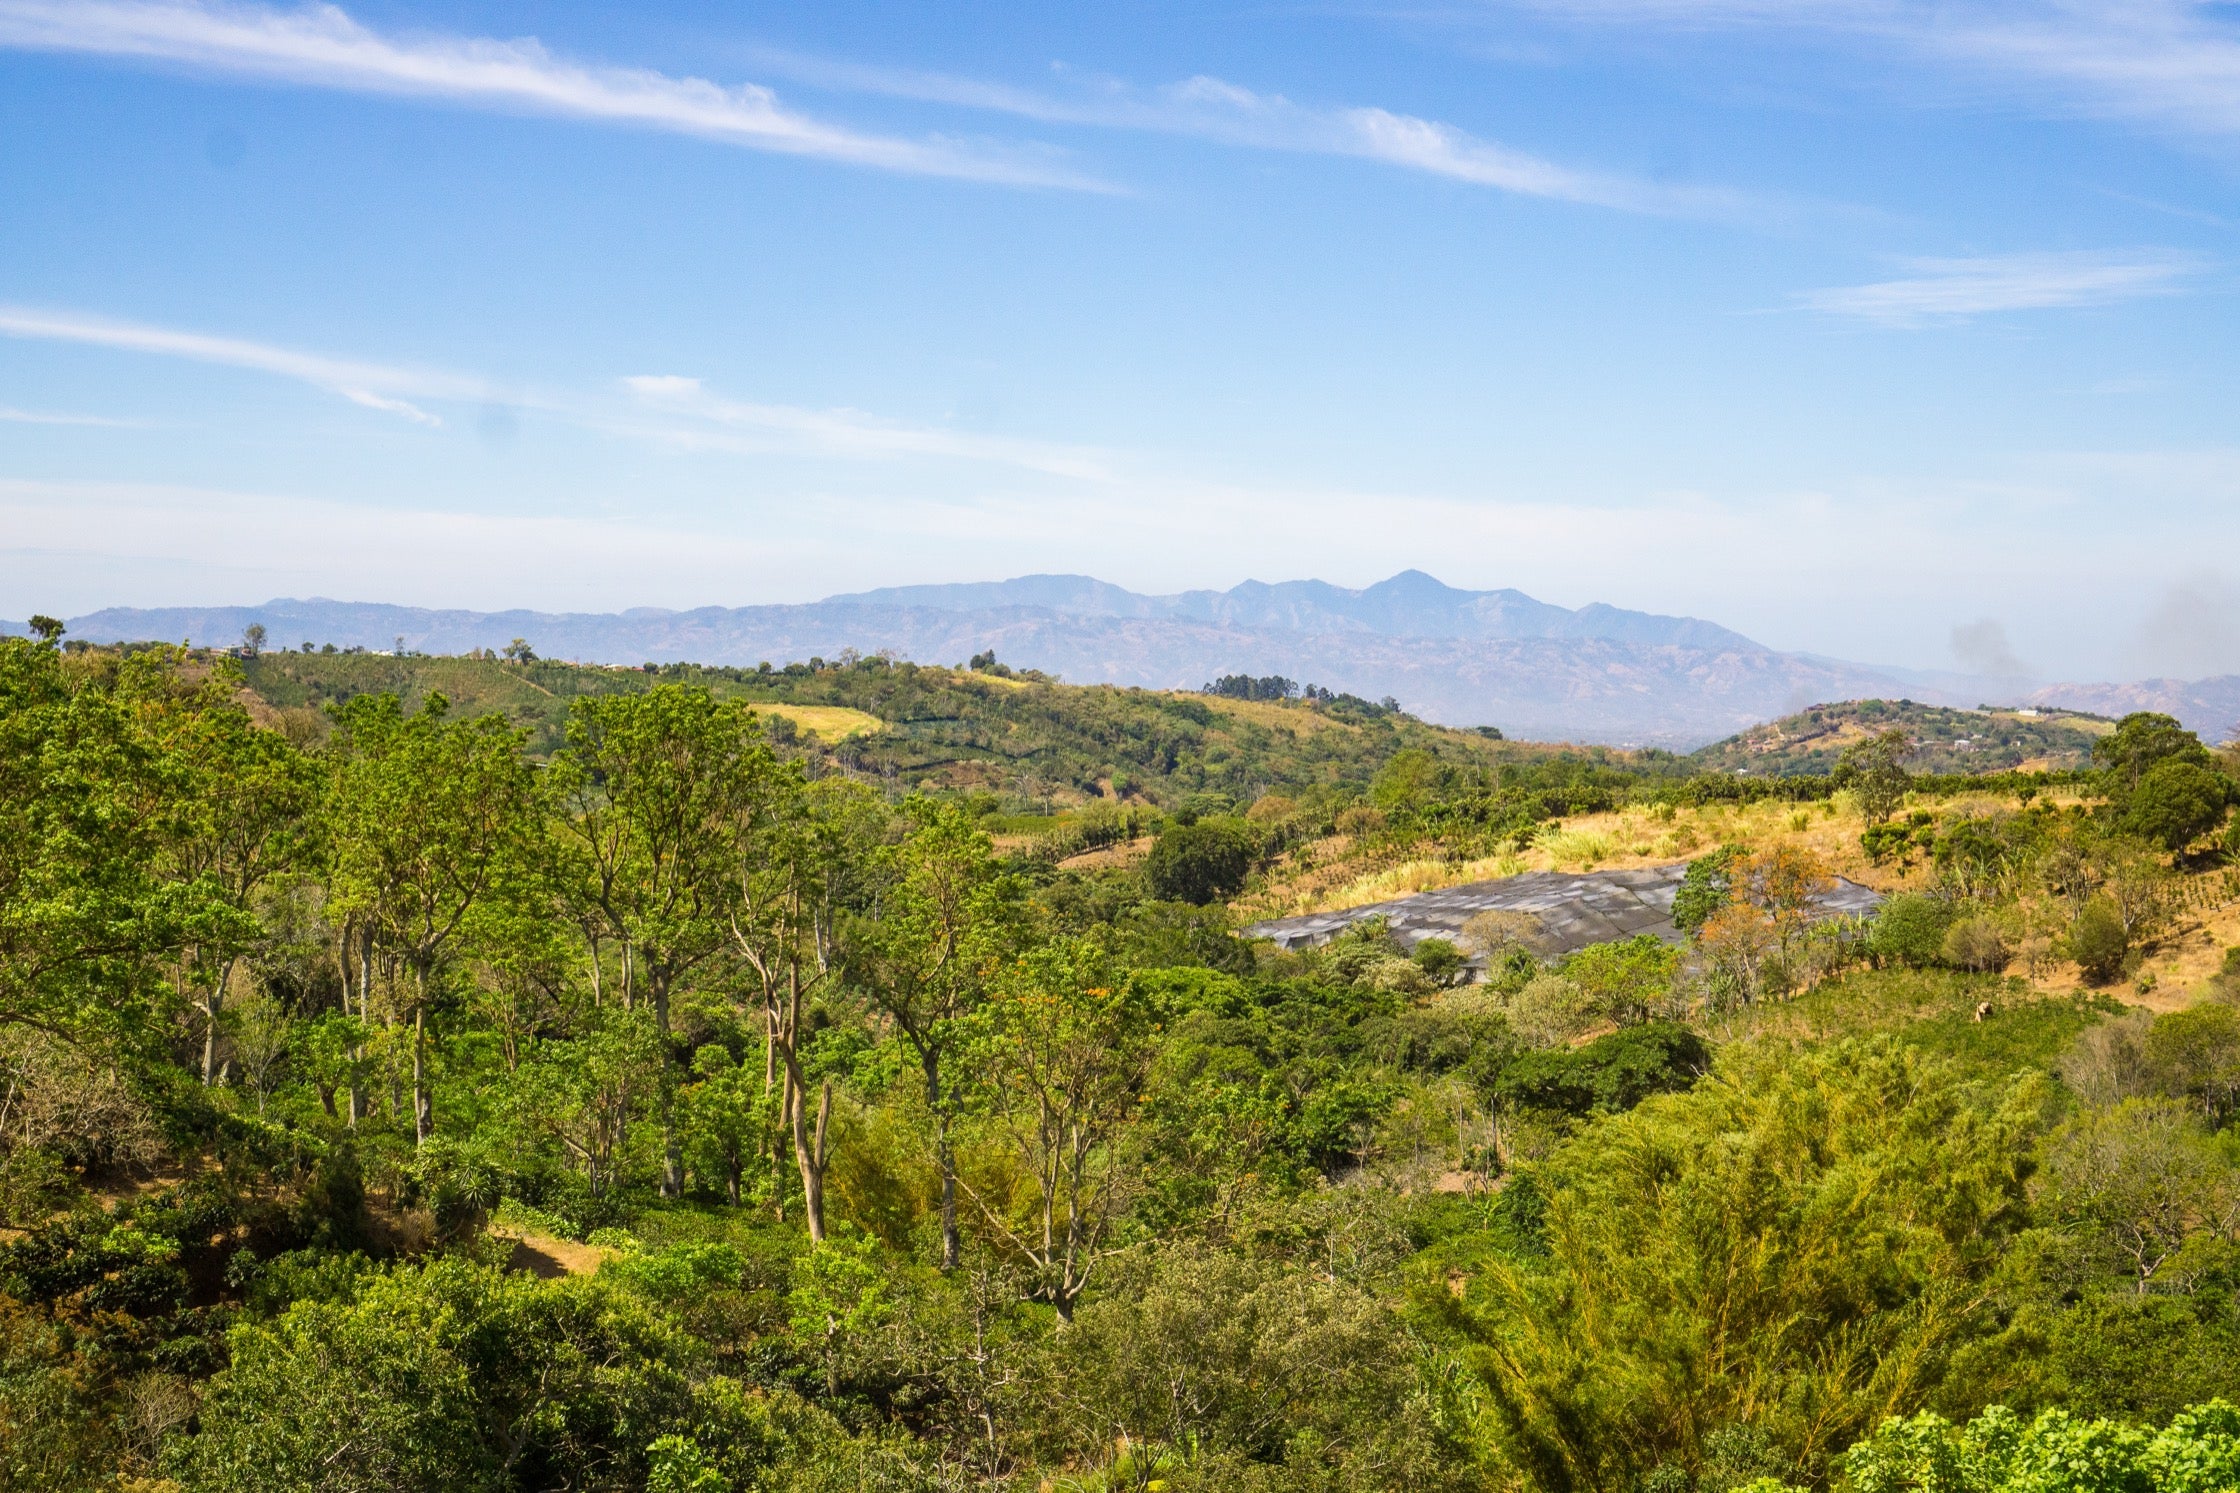 A photo of the landscape at Las Lajas